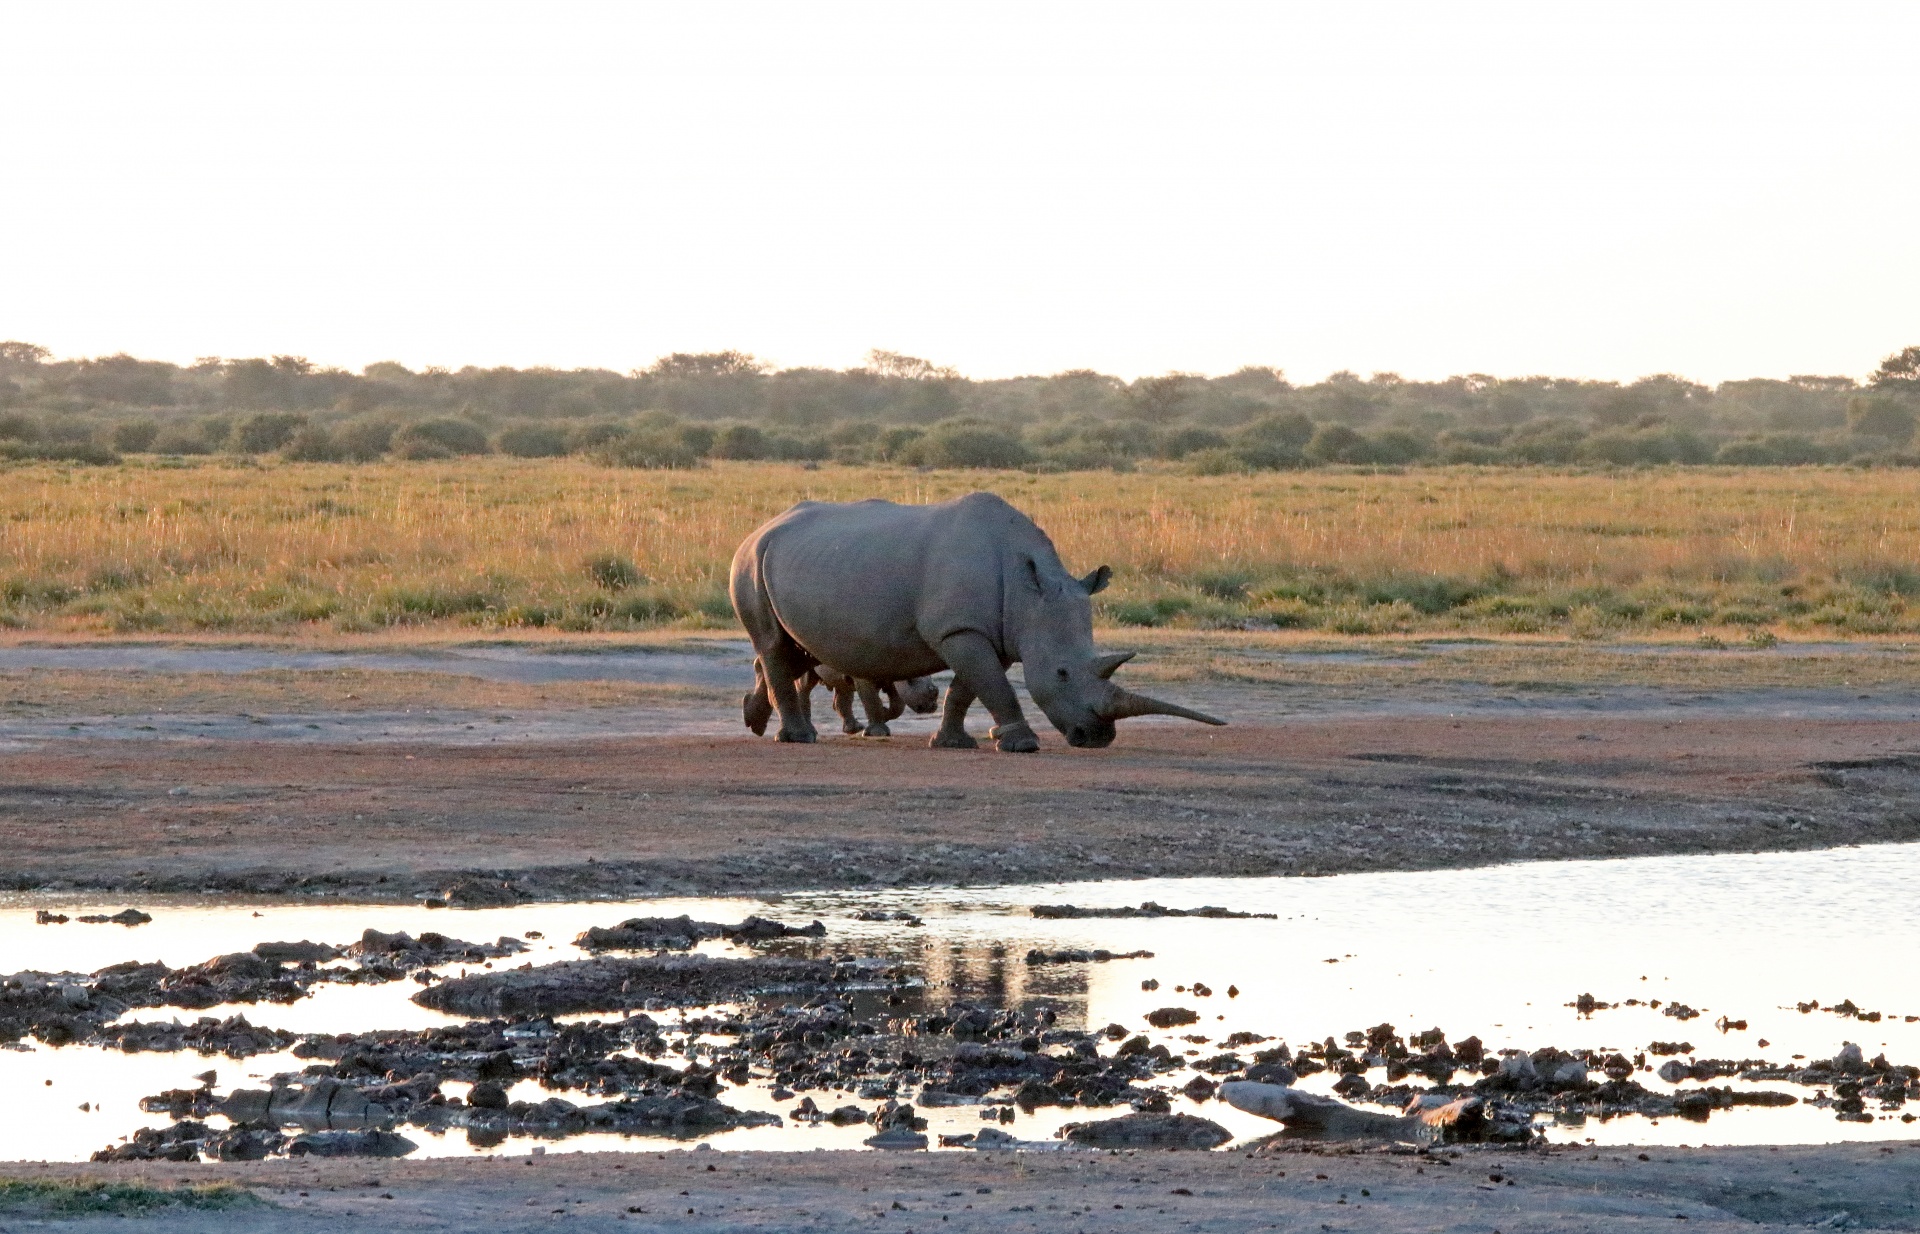 Vuxen noshörning med sitt barn bakom